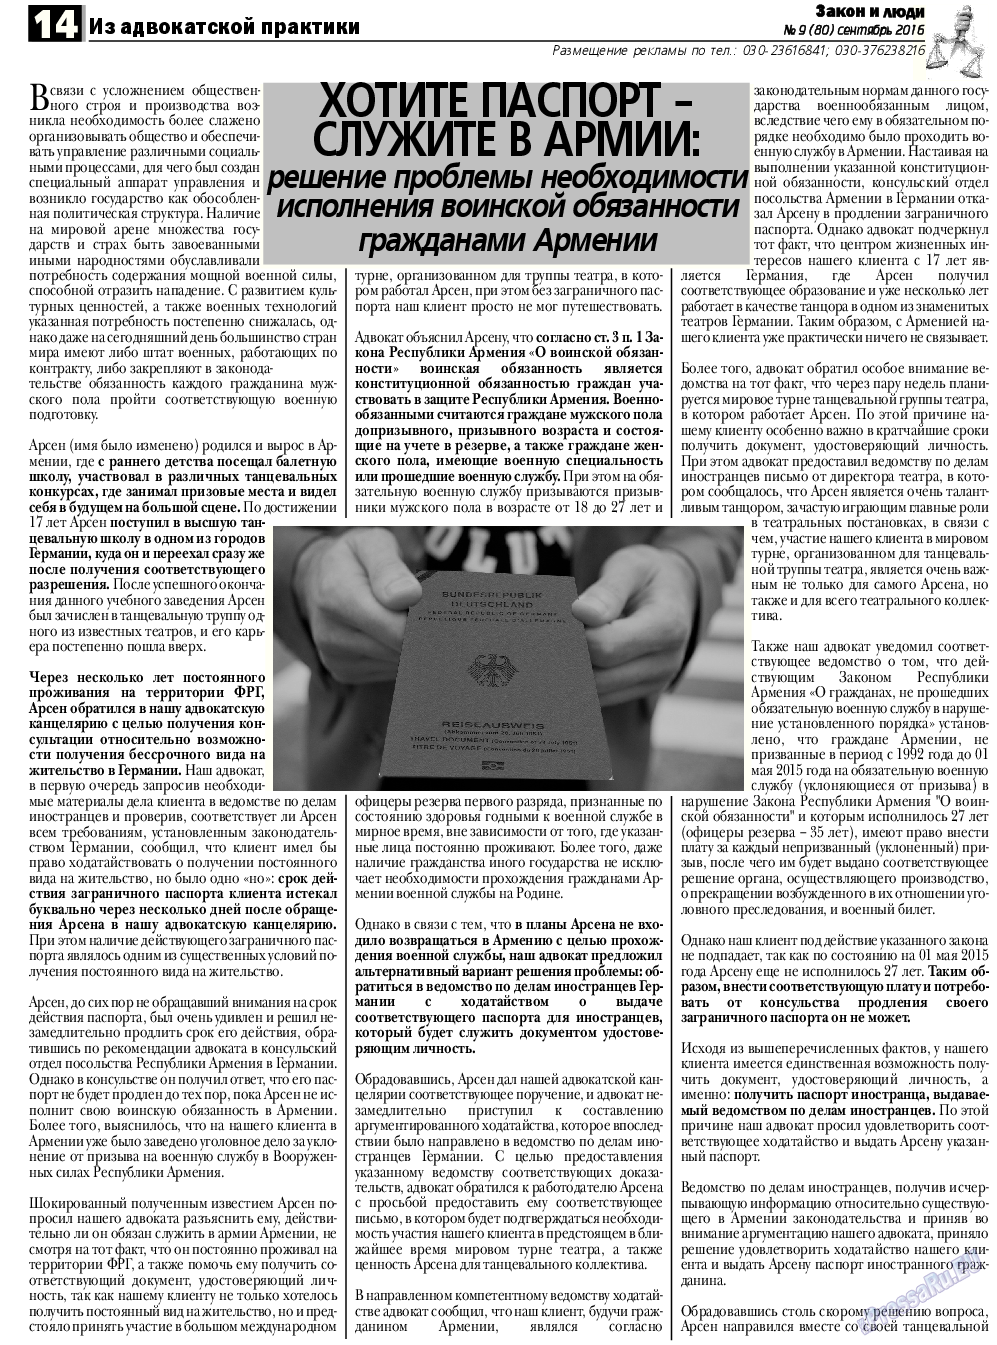 Закон и люди, газета. 2016 №9 стр.14